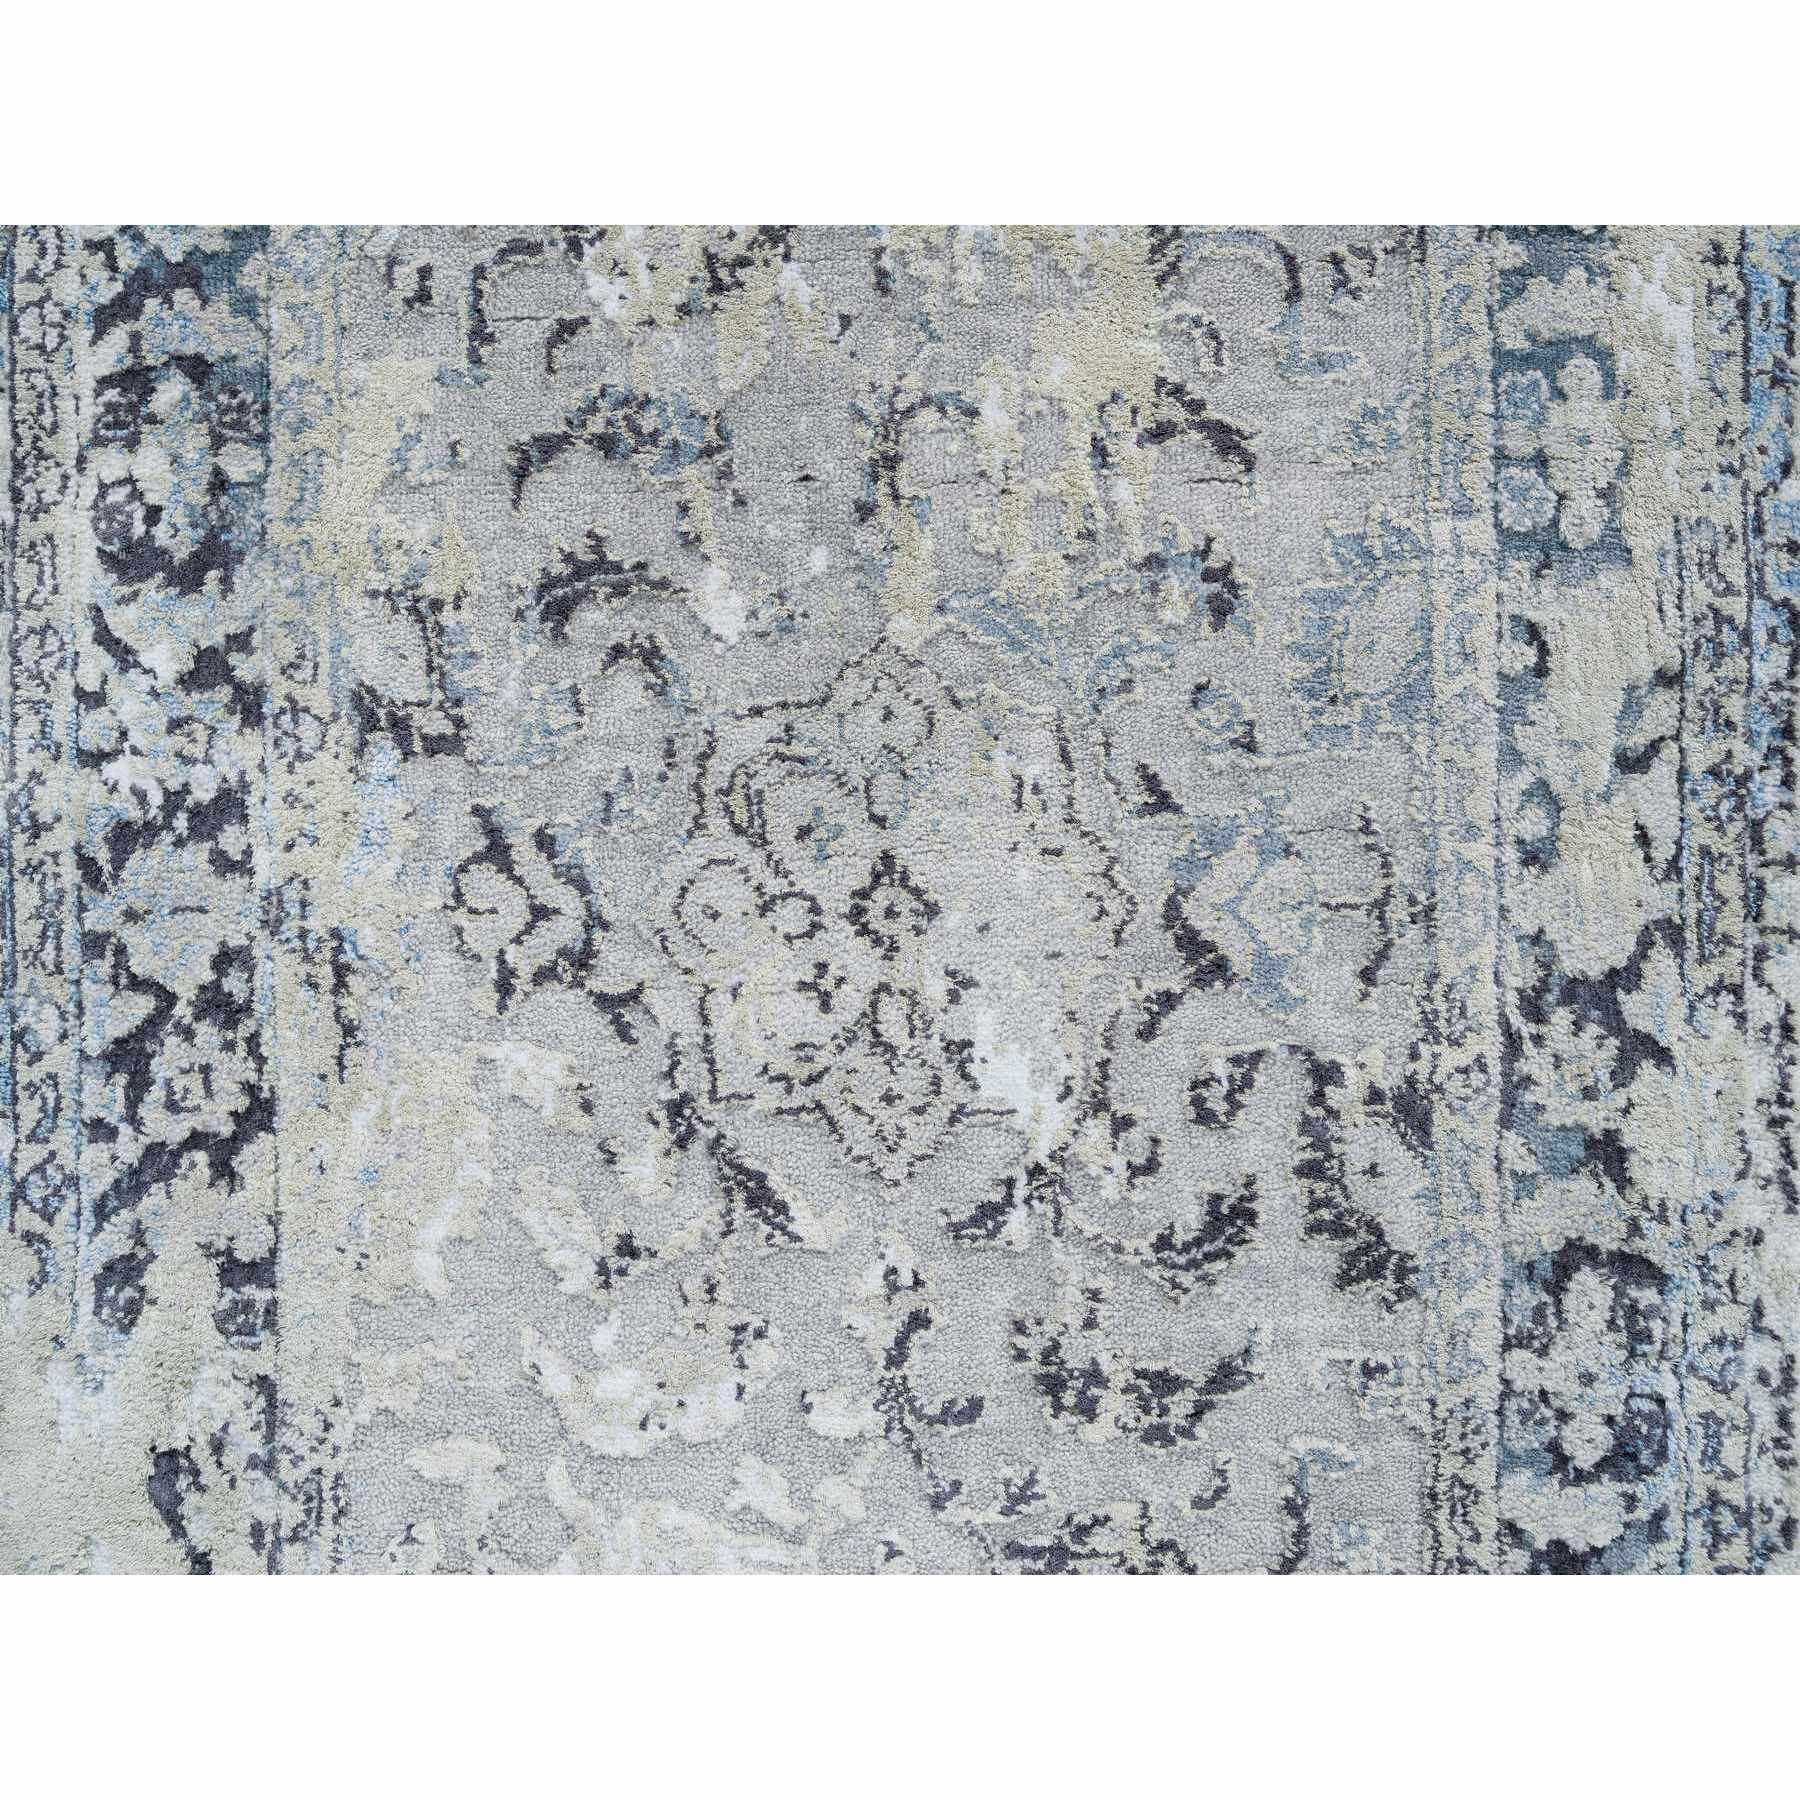 2'6"x6' Light Gray, Hand Woven Broken Kashan Design, Pure Silk with Wool, Runner Oriental Rug 